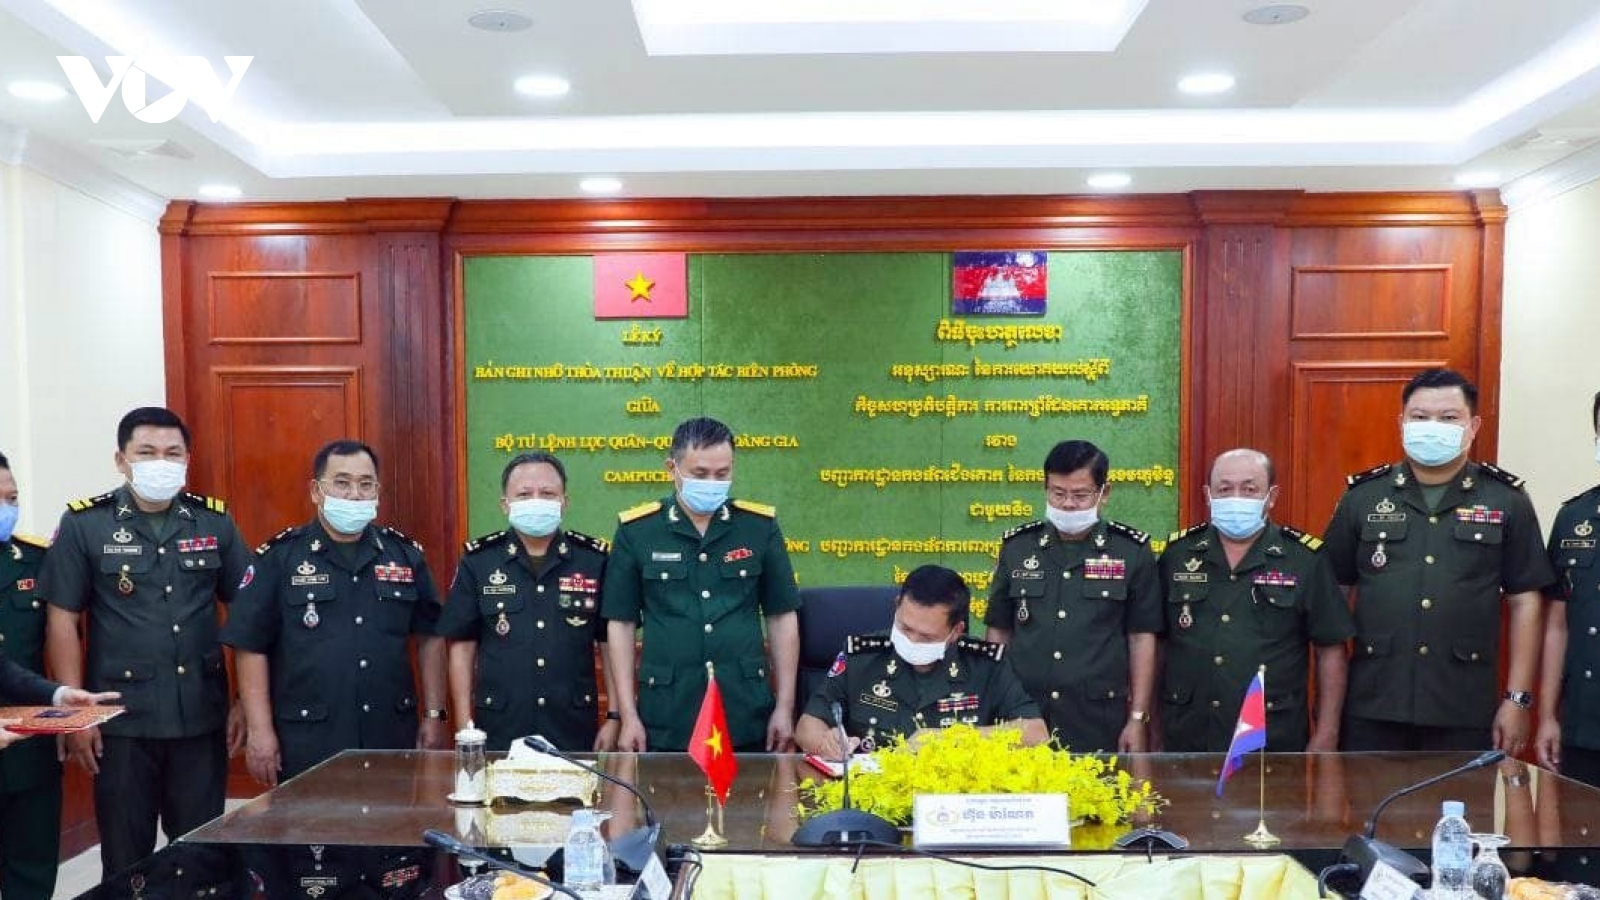 Việt Nam – Campuchia tăng cường hợp tác xây dựng biên giới